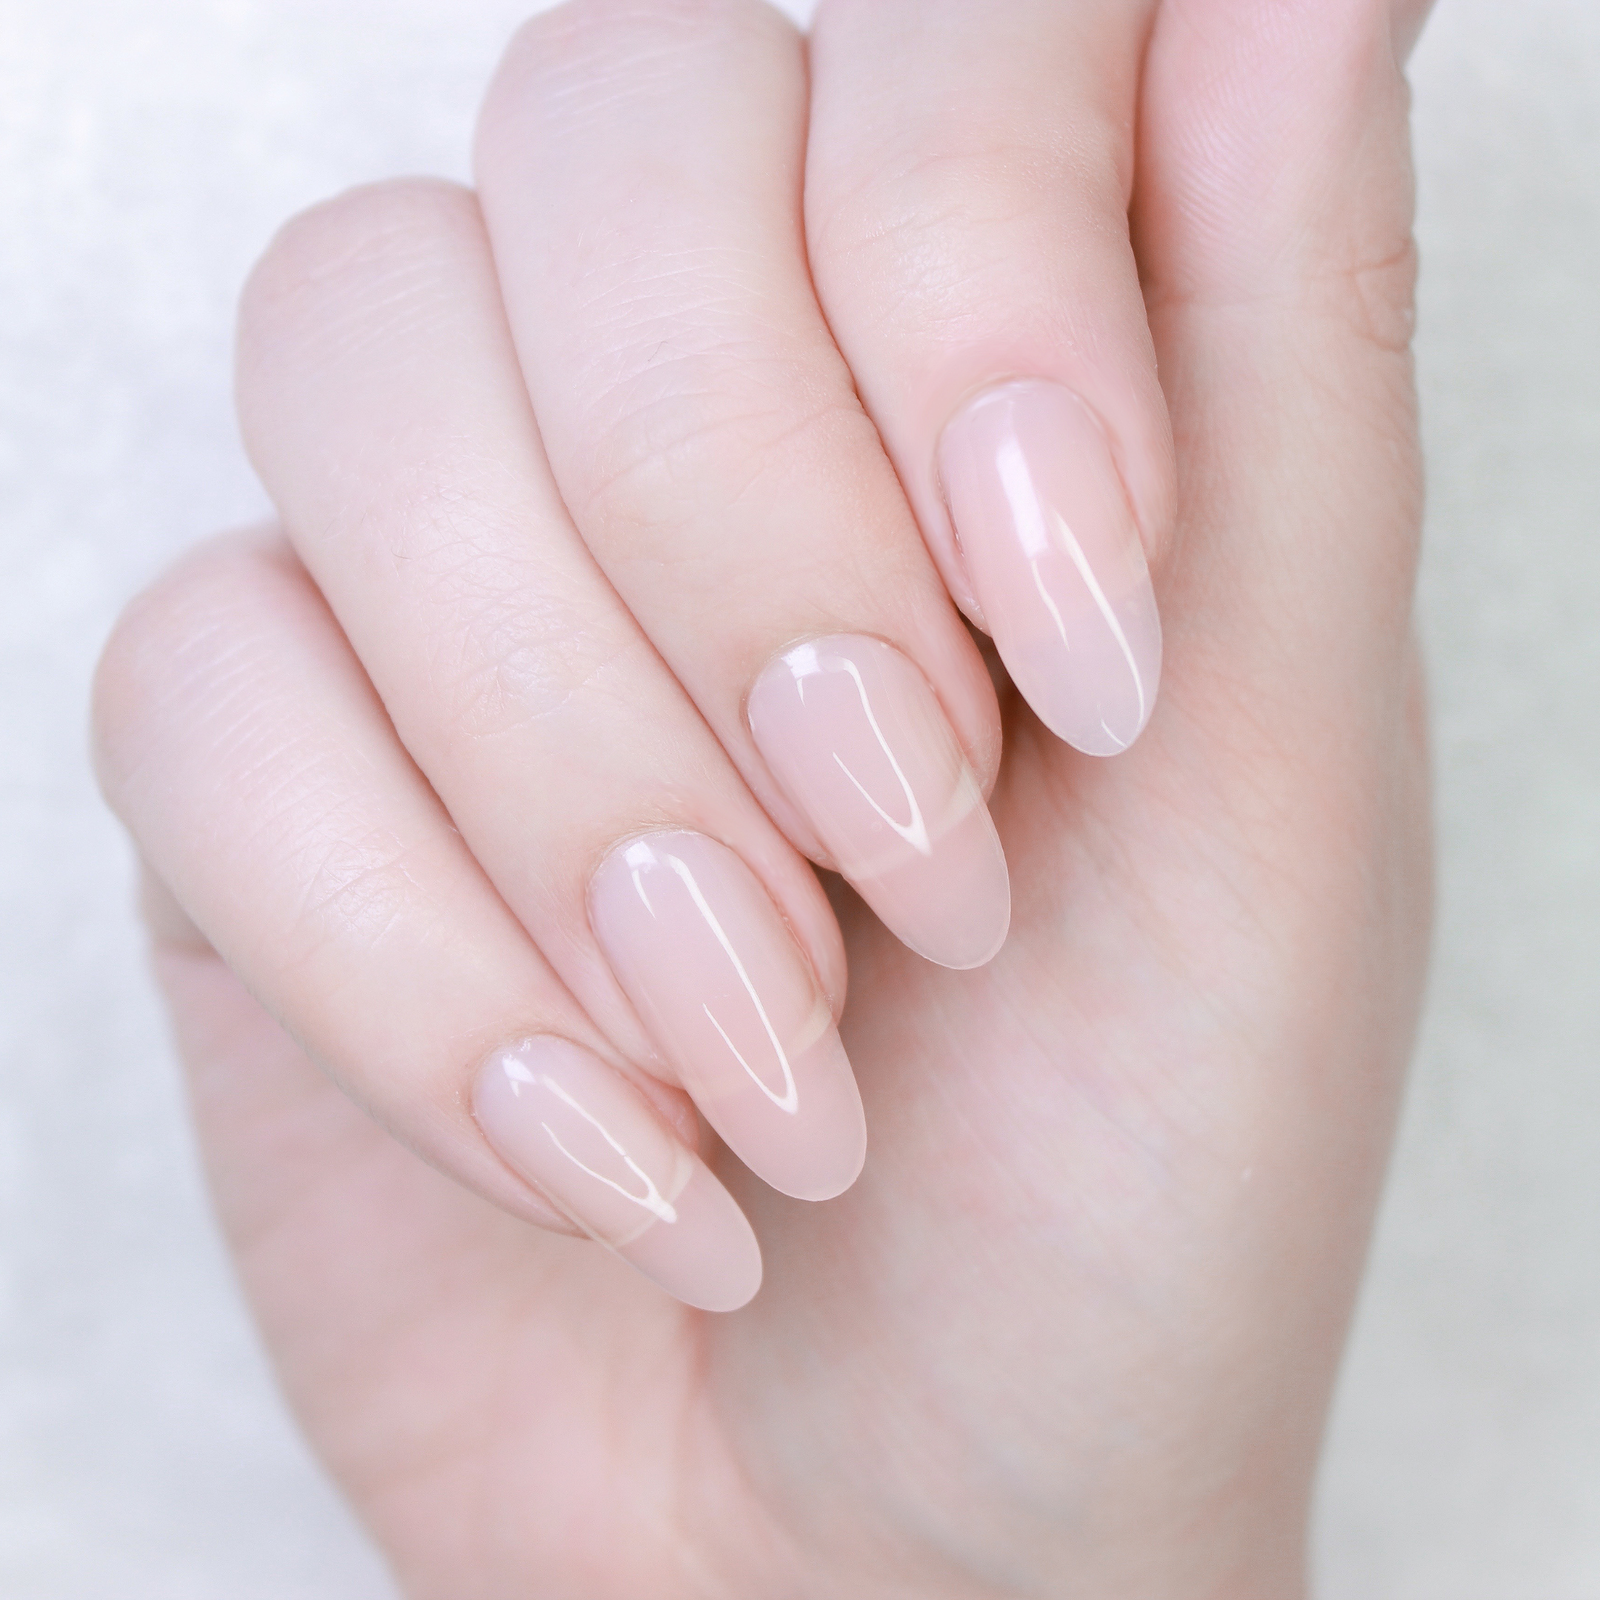 nail shapes almond nails